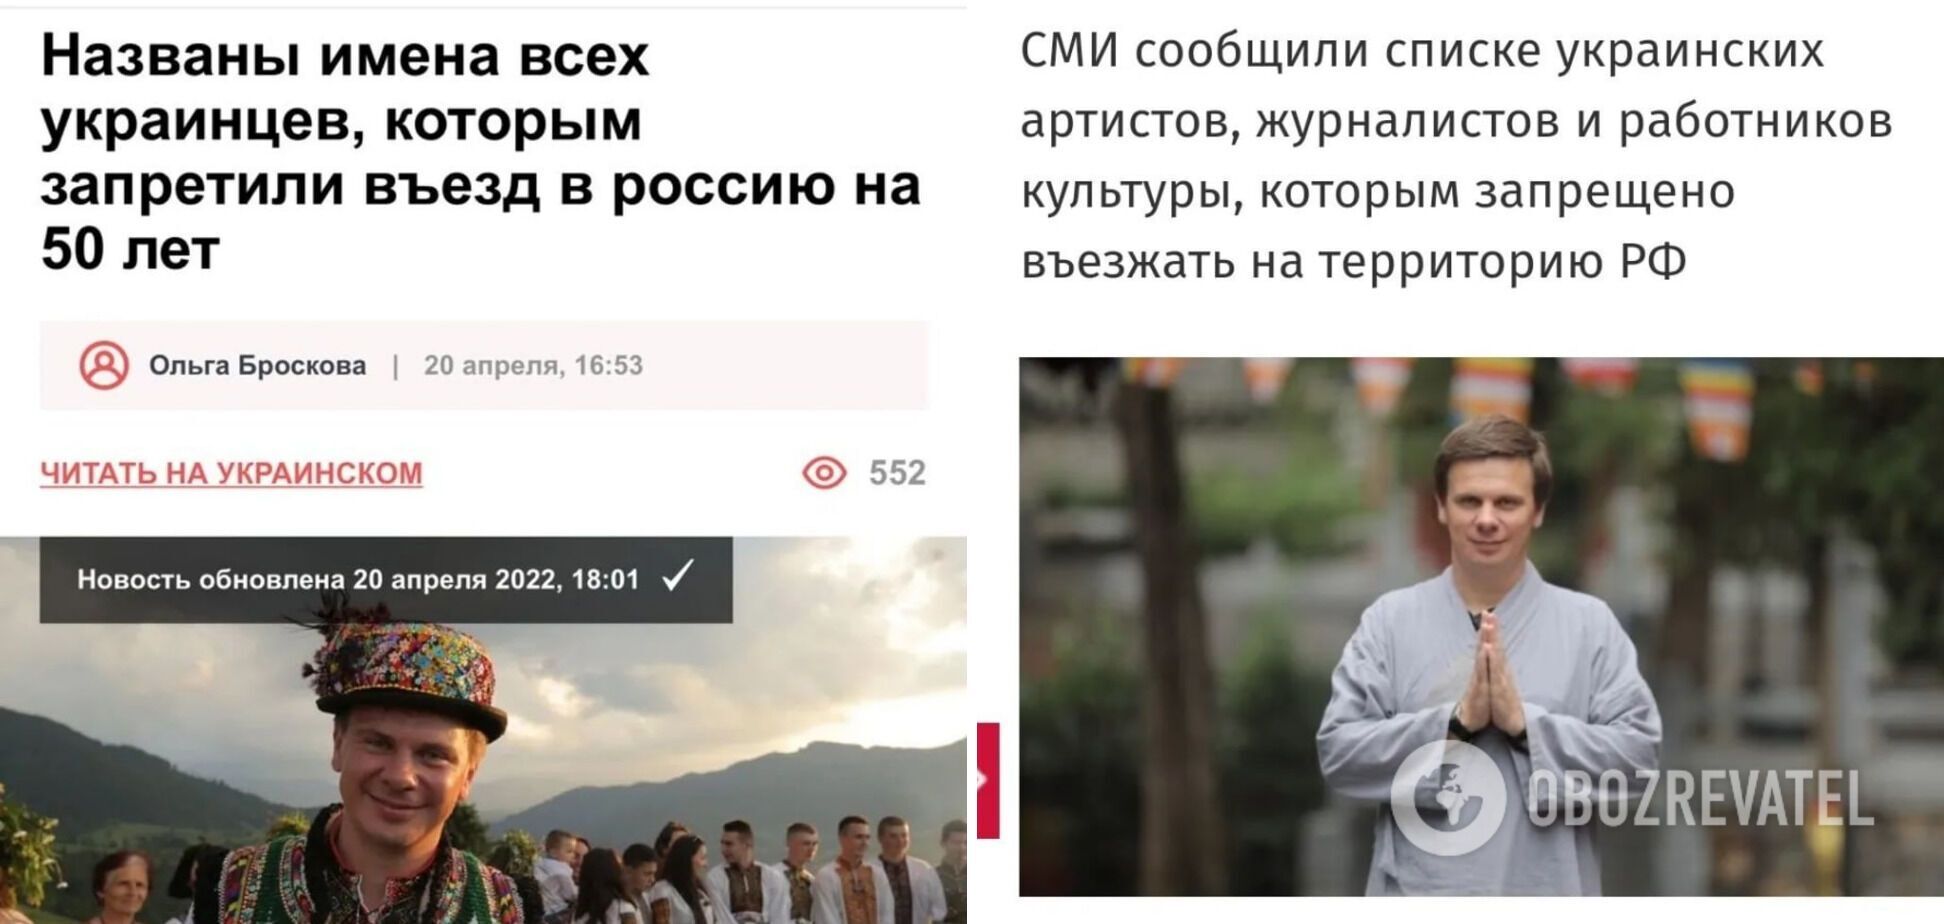 Скриншоты российских новостей о запрете въезда Комарову.